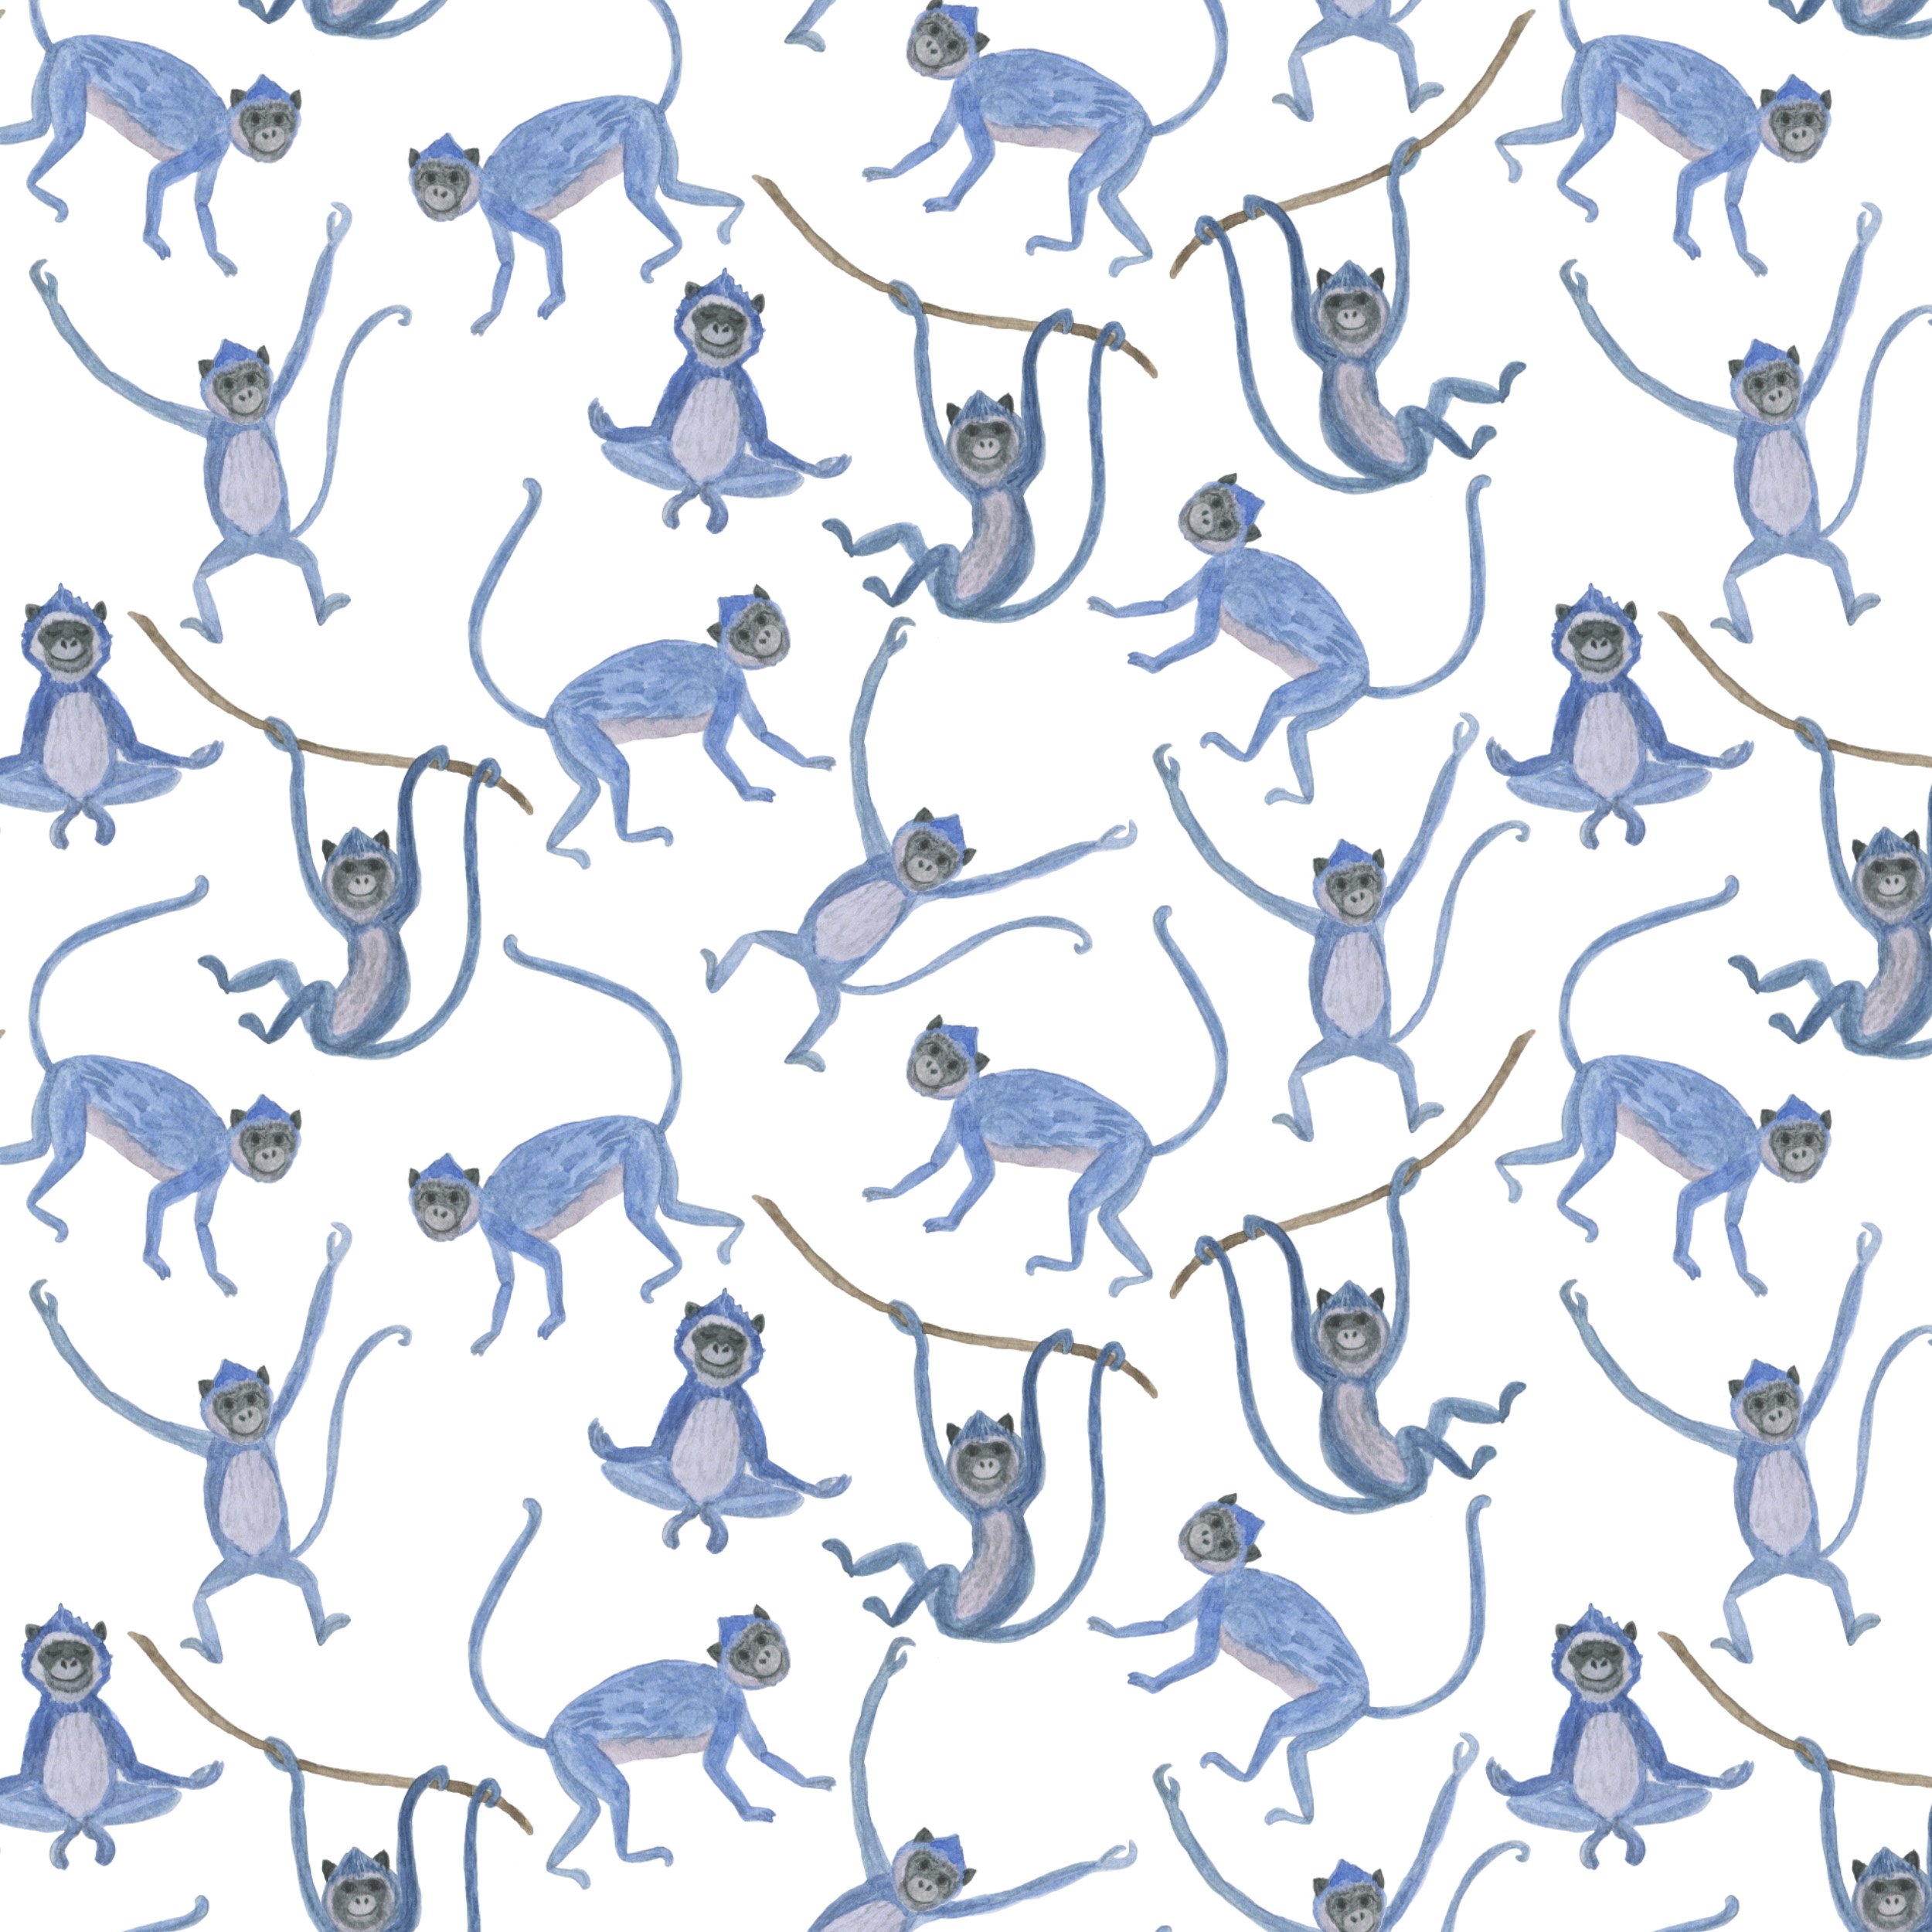 Cute small blue monkeys.